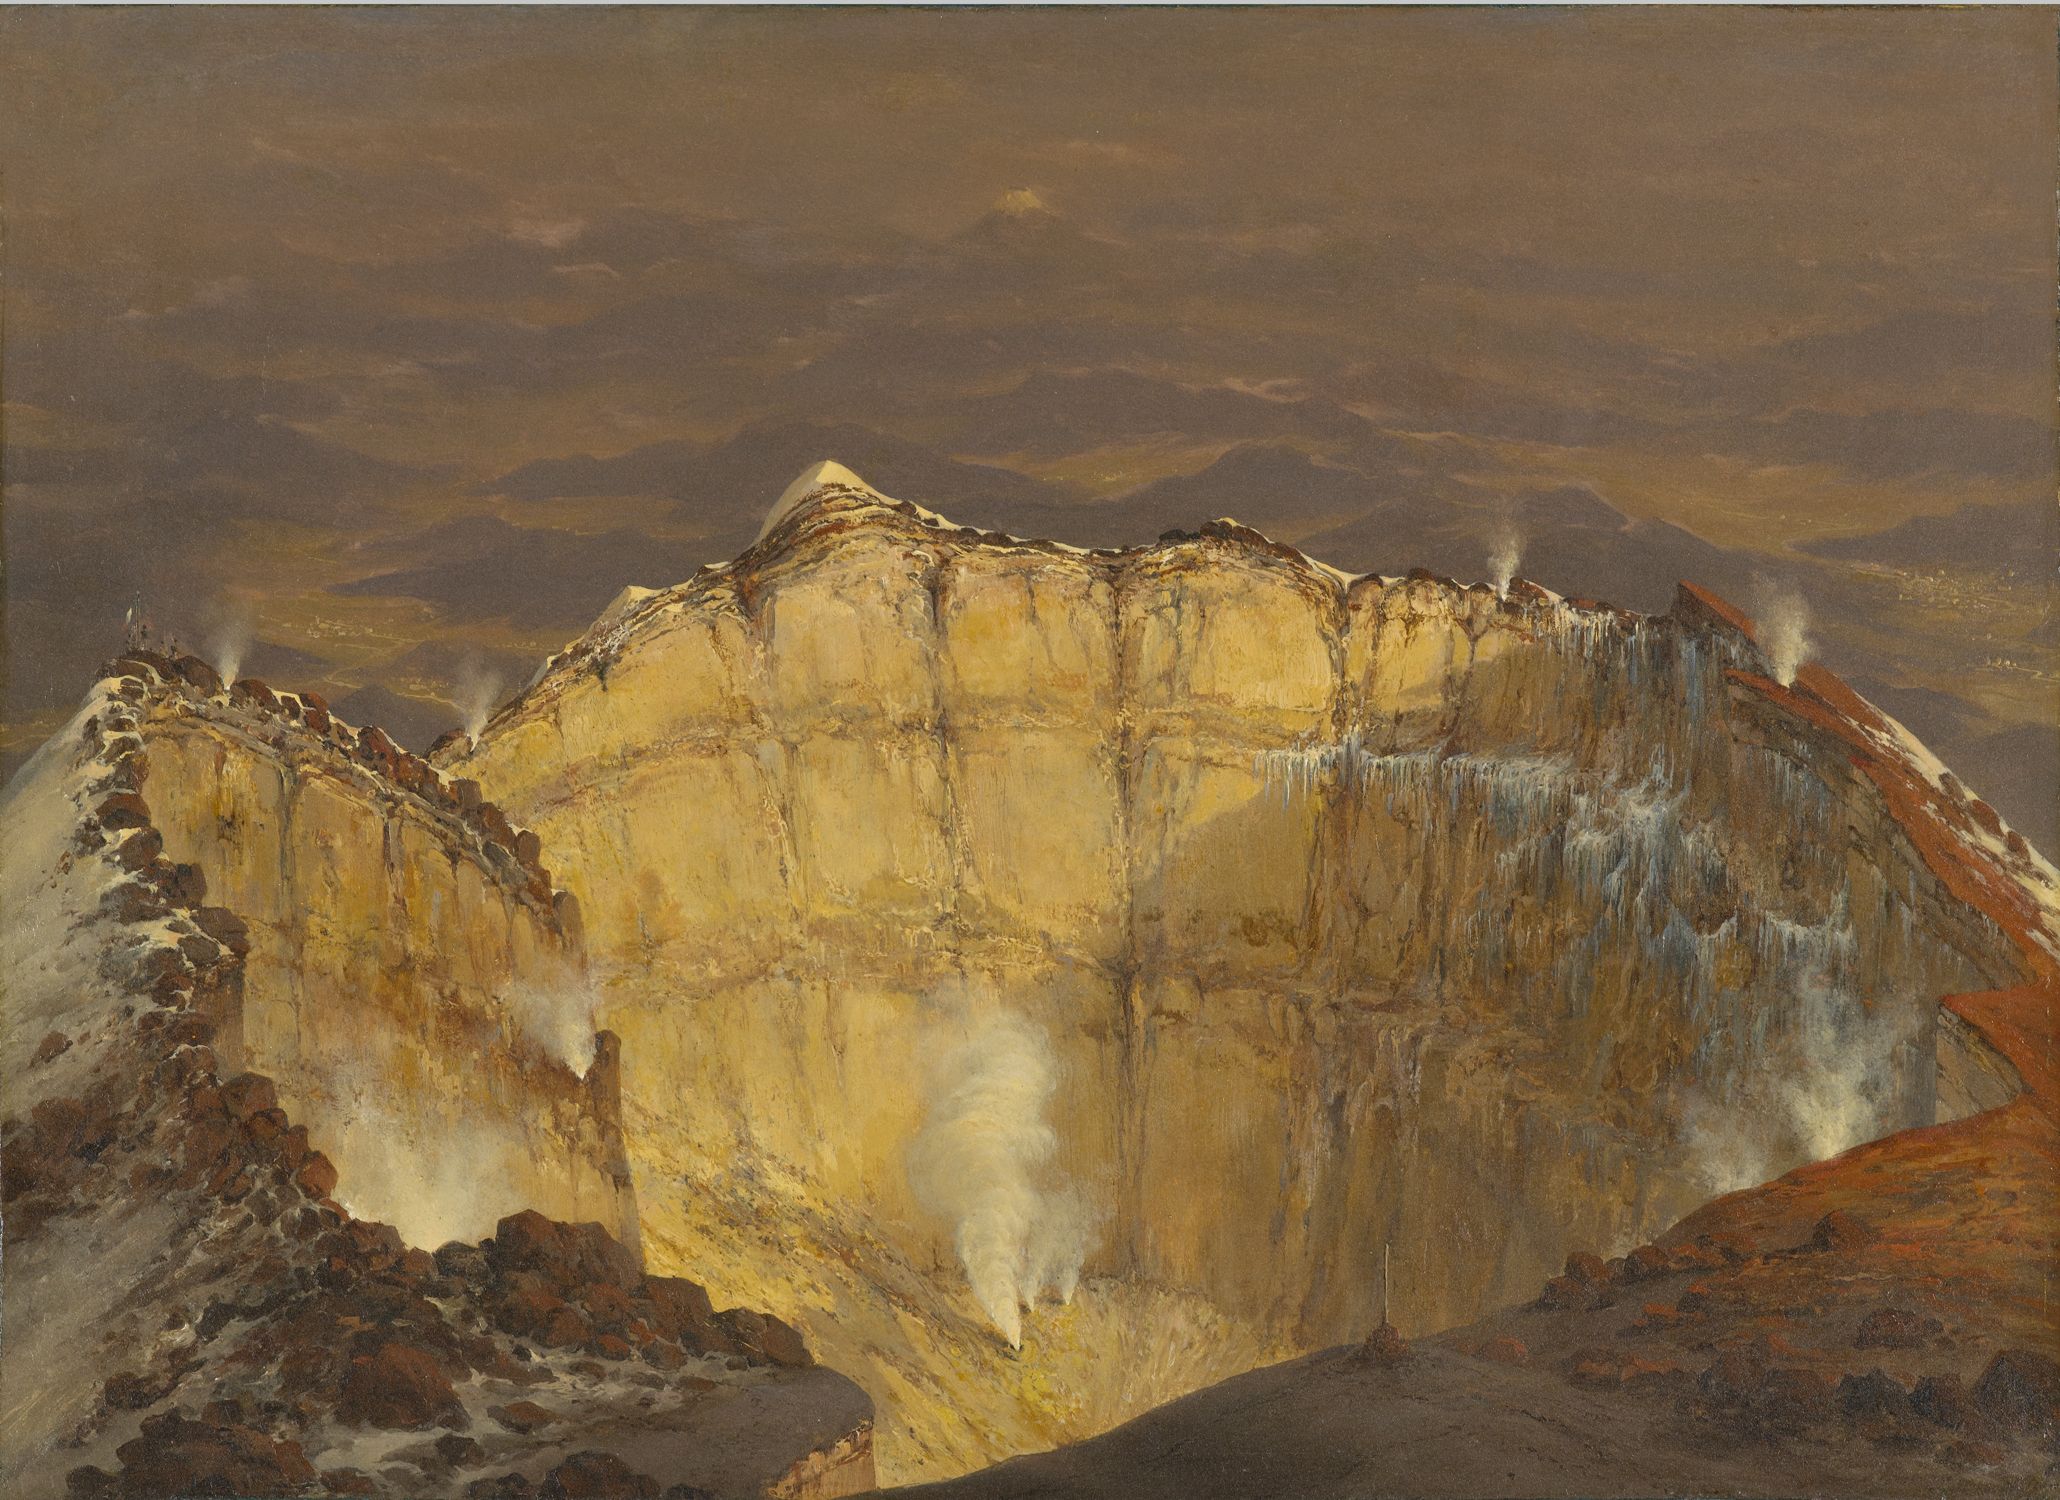 Craterul Popocatépetl by Jean-Baptiste Louis Gros - 1833 - 30.5 x 43.2 cm 